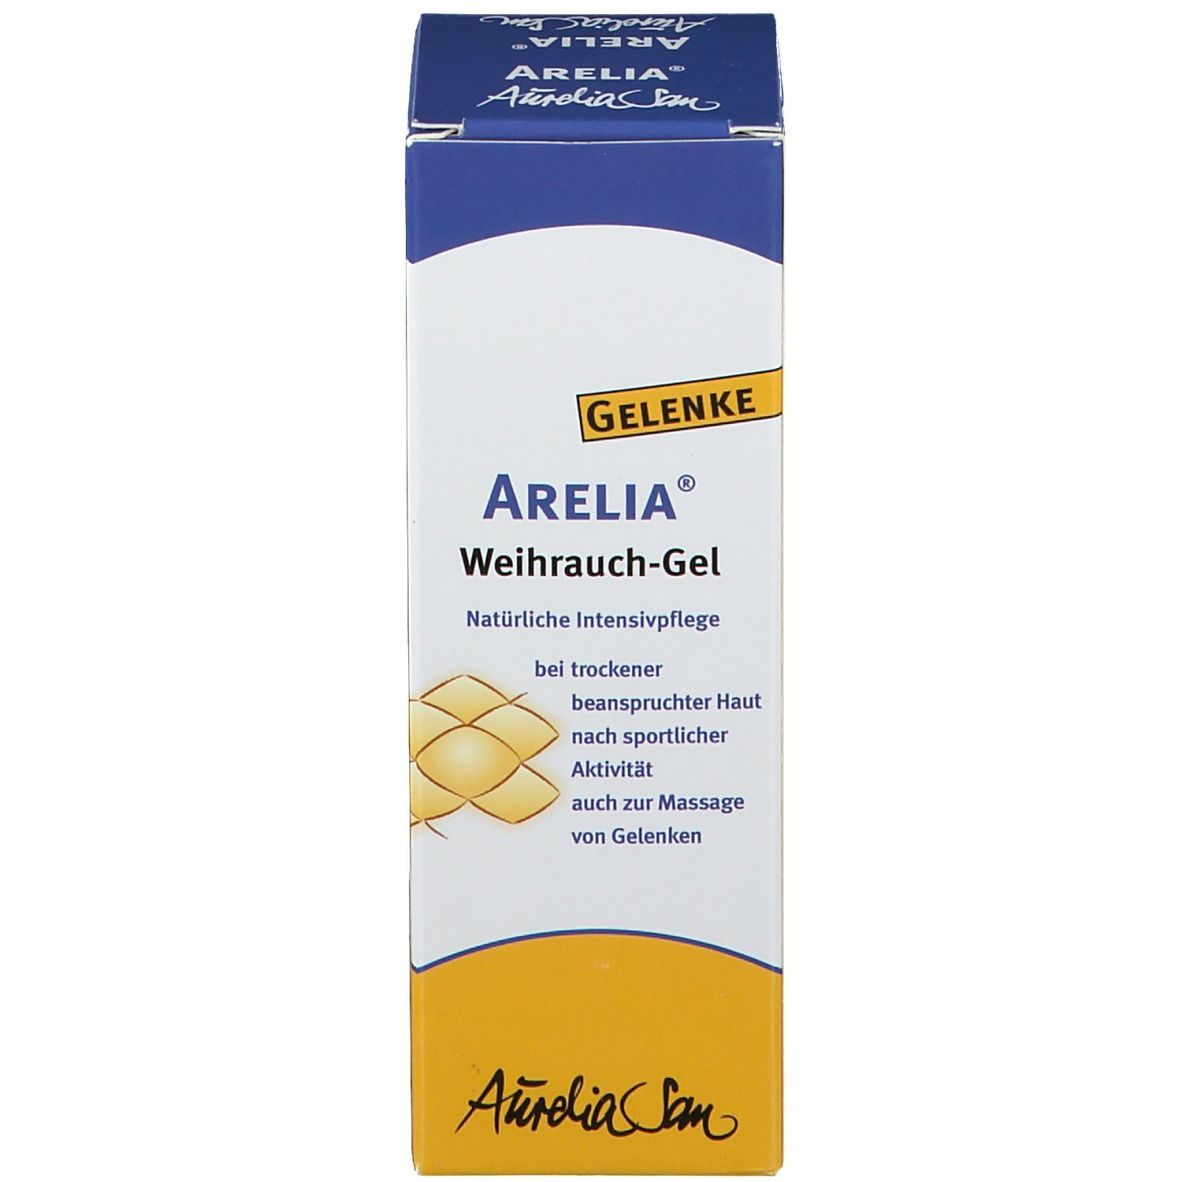 Arelia® Weihrauch-Gel